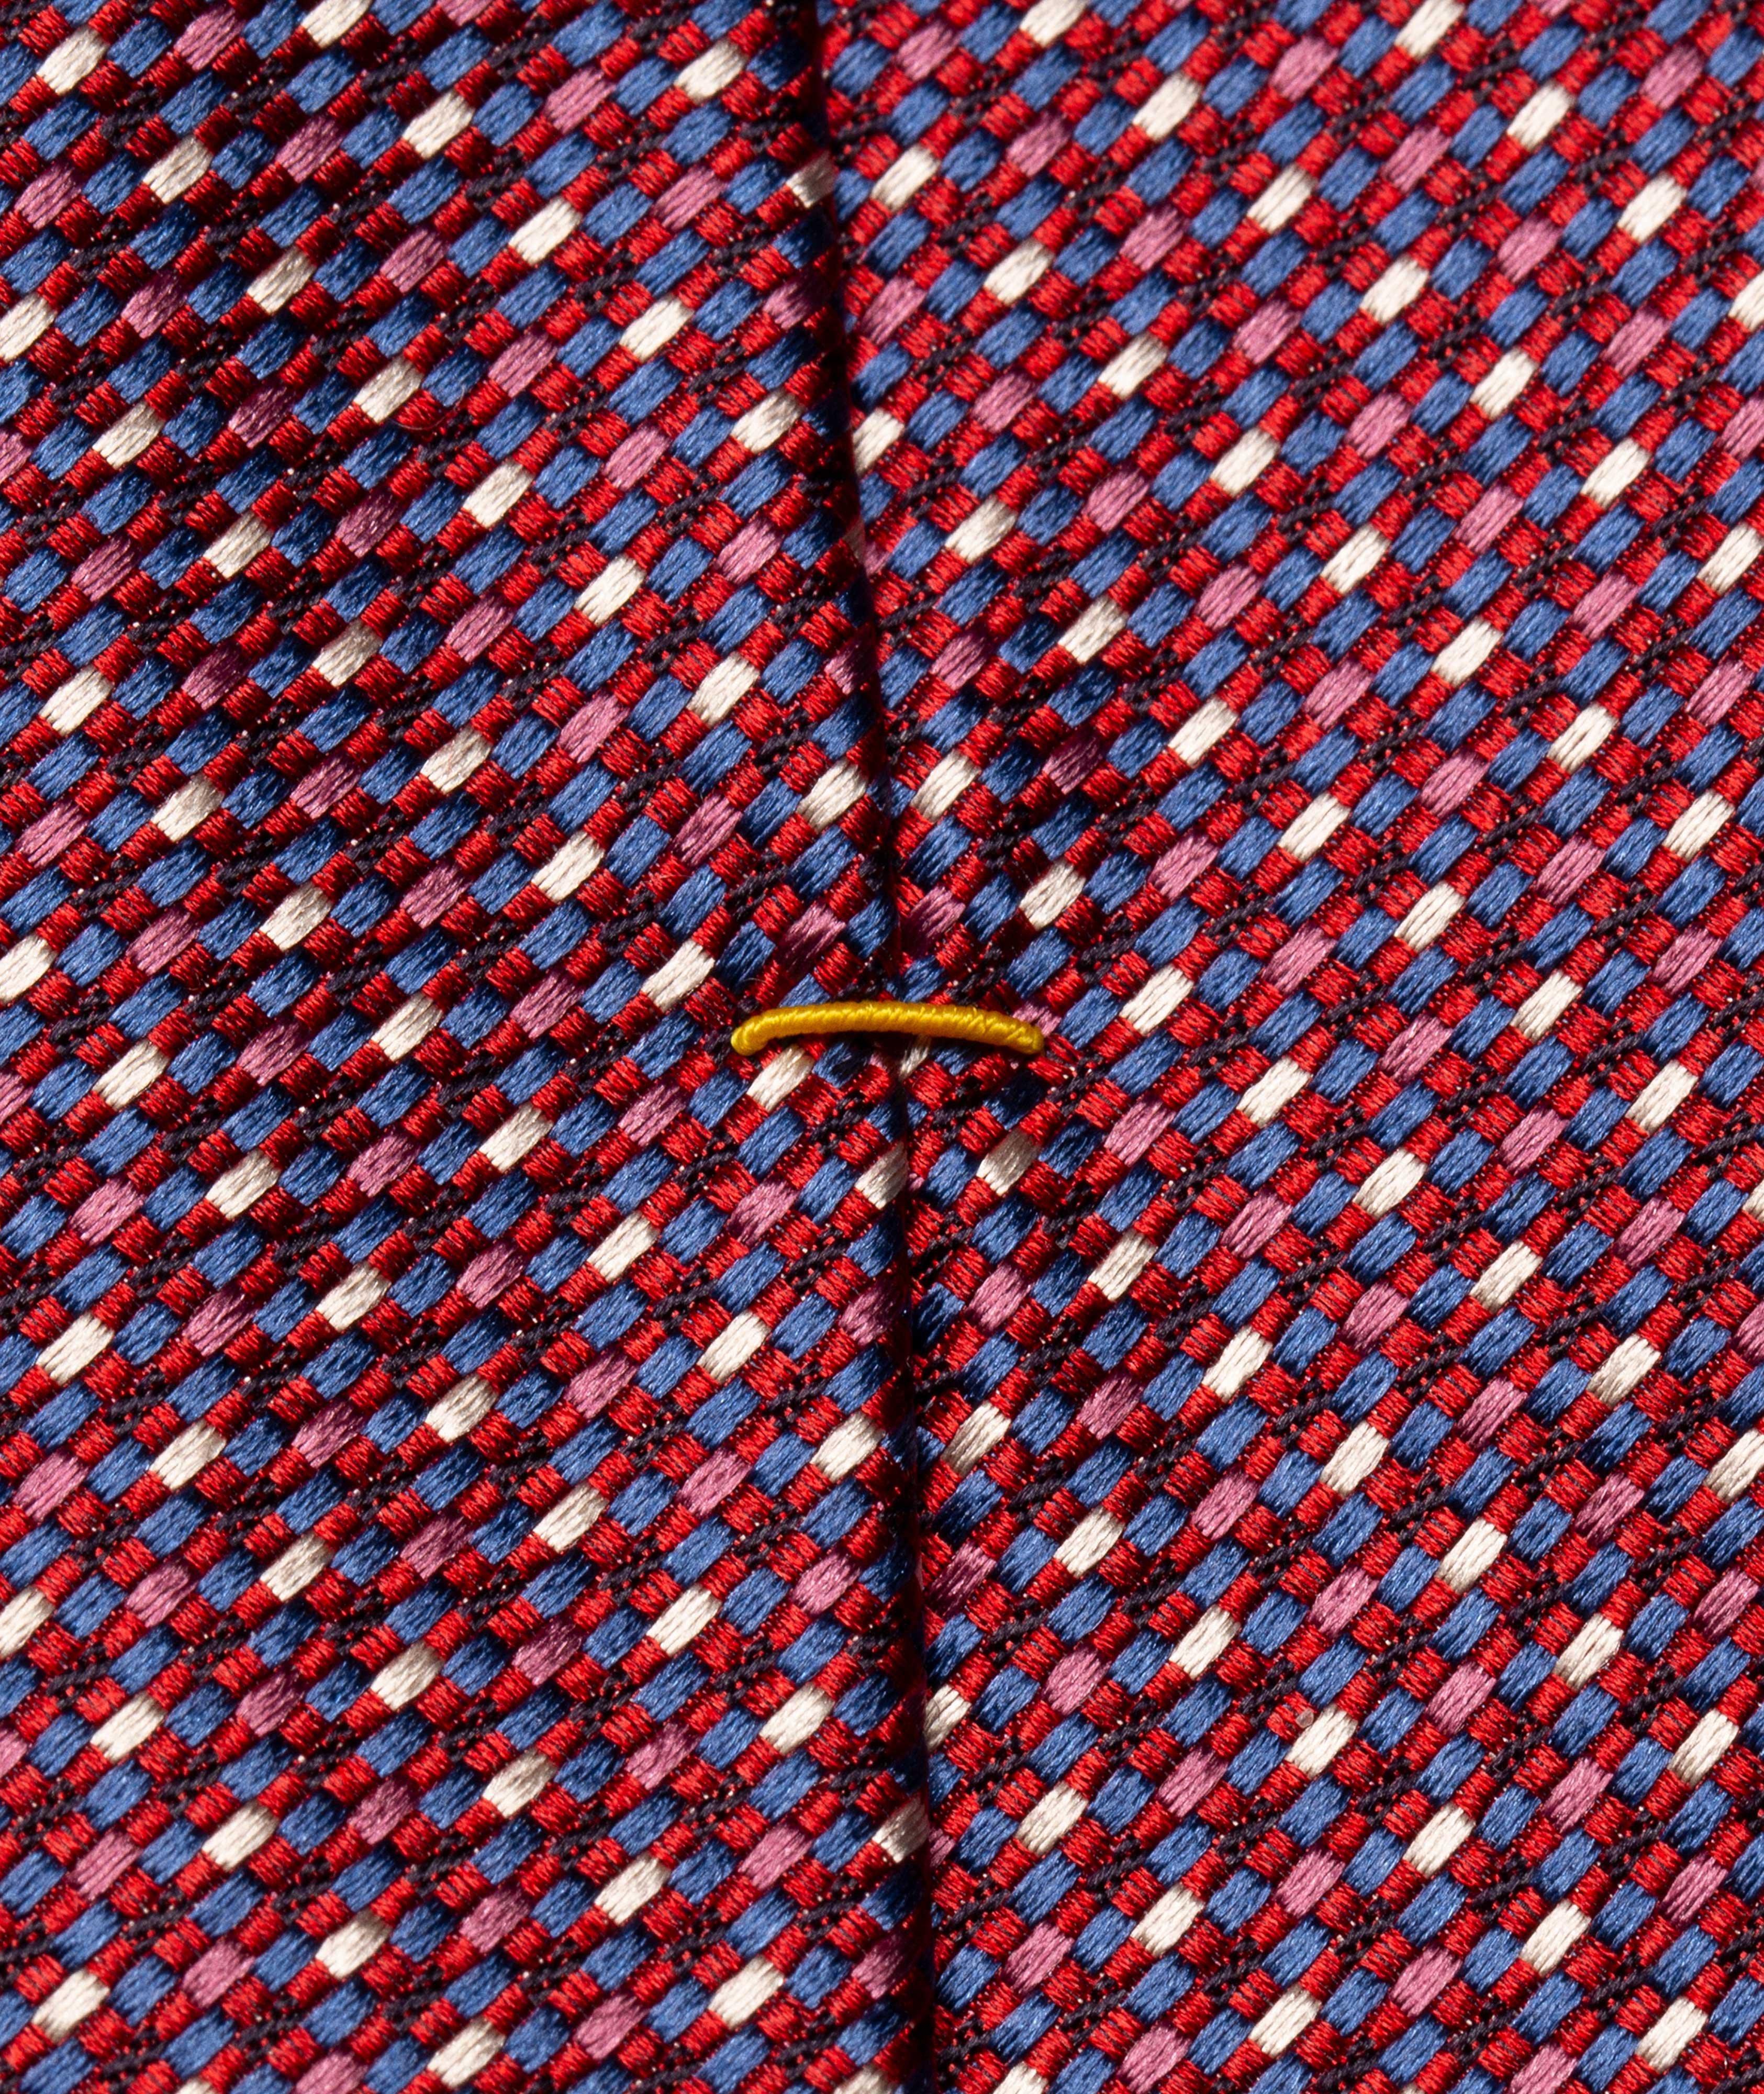 Cravate en soie à motif répété image 1